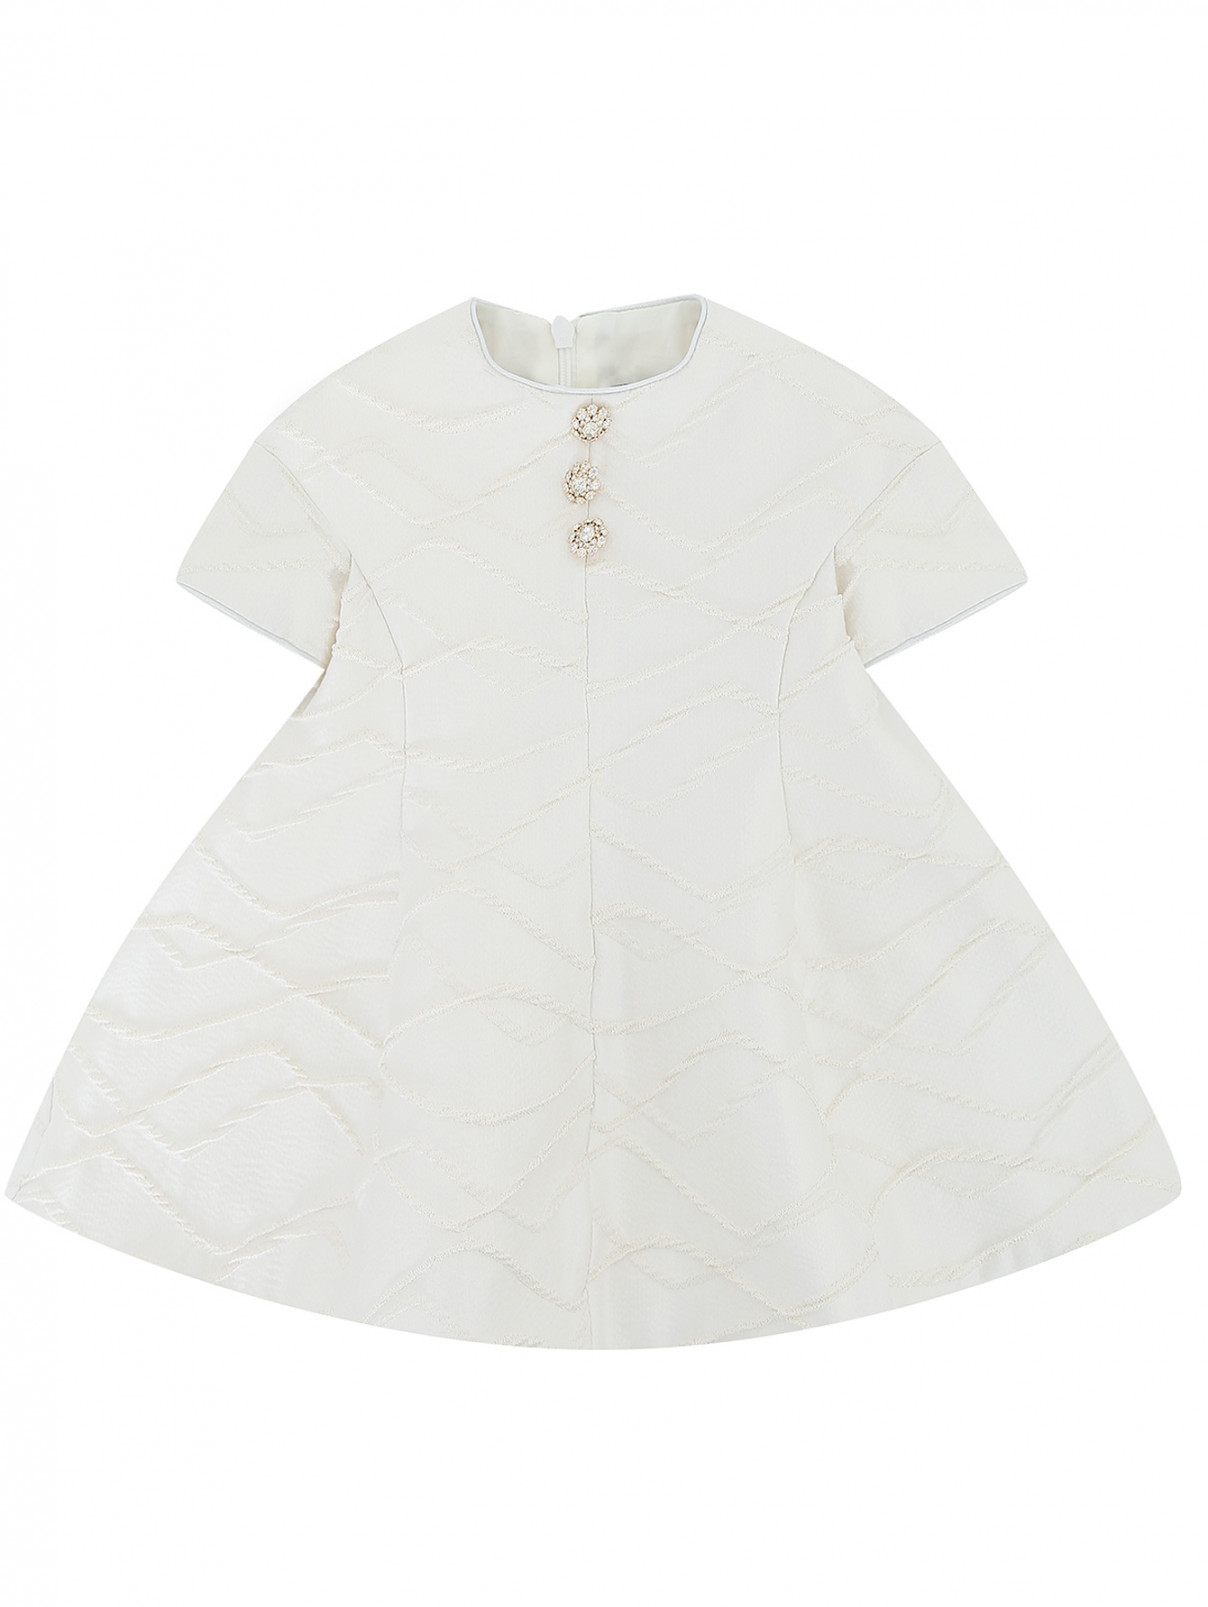 Платье с контрастными пуговицами MiMiSol  –  Общий вид  – Цвет:  Белый